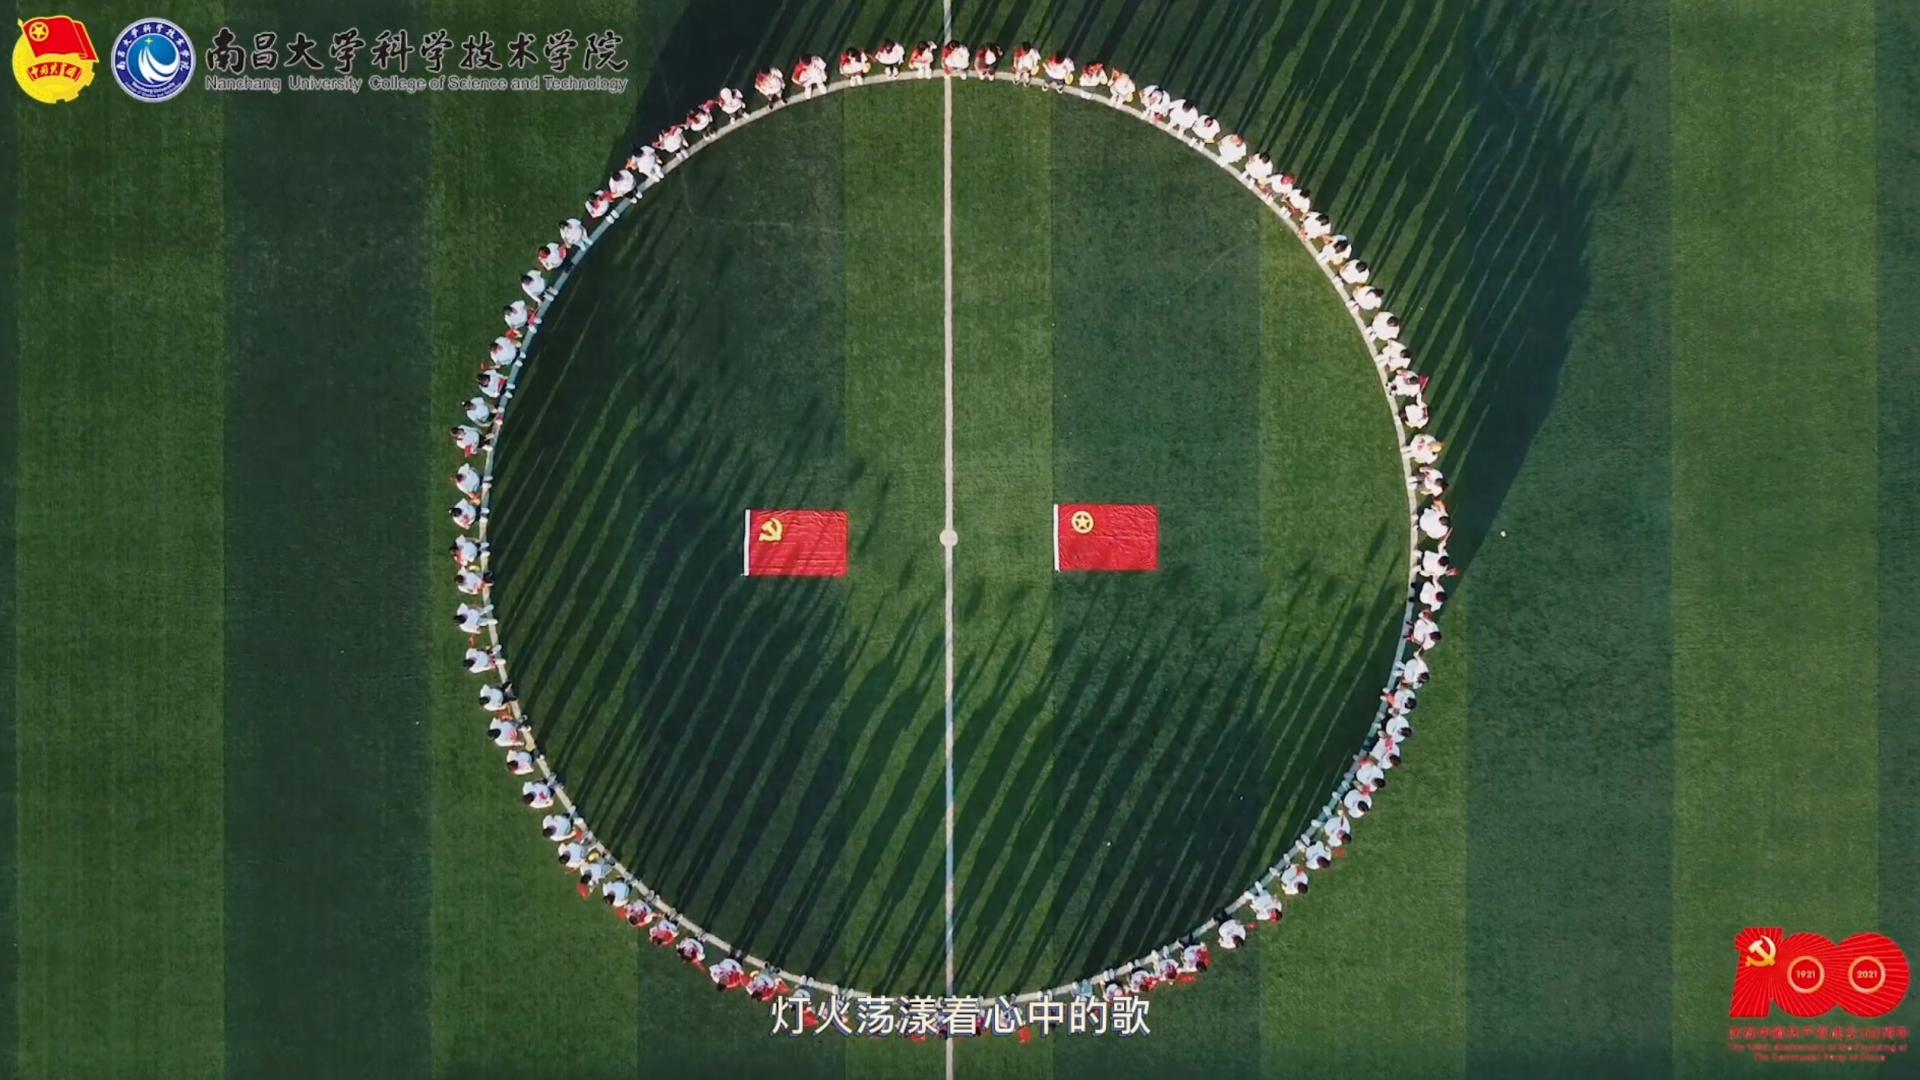 南大科院团委翻唱《灯火里的中国》献礼中国共产党成立一百周年